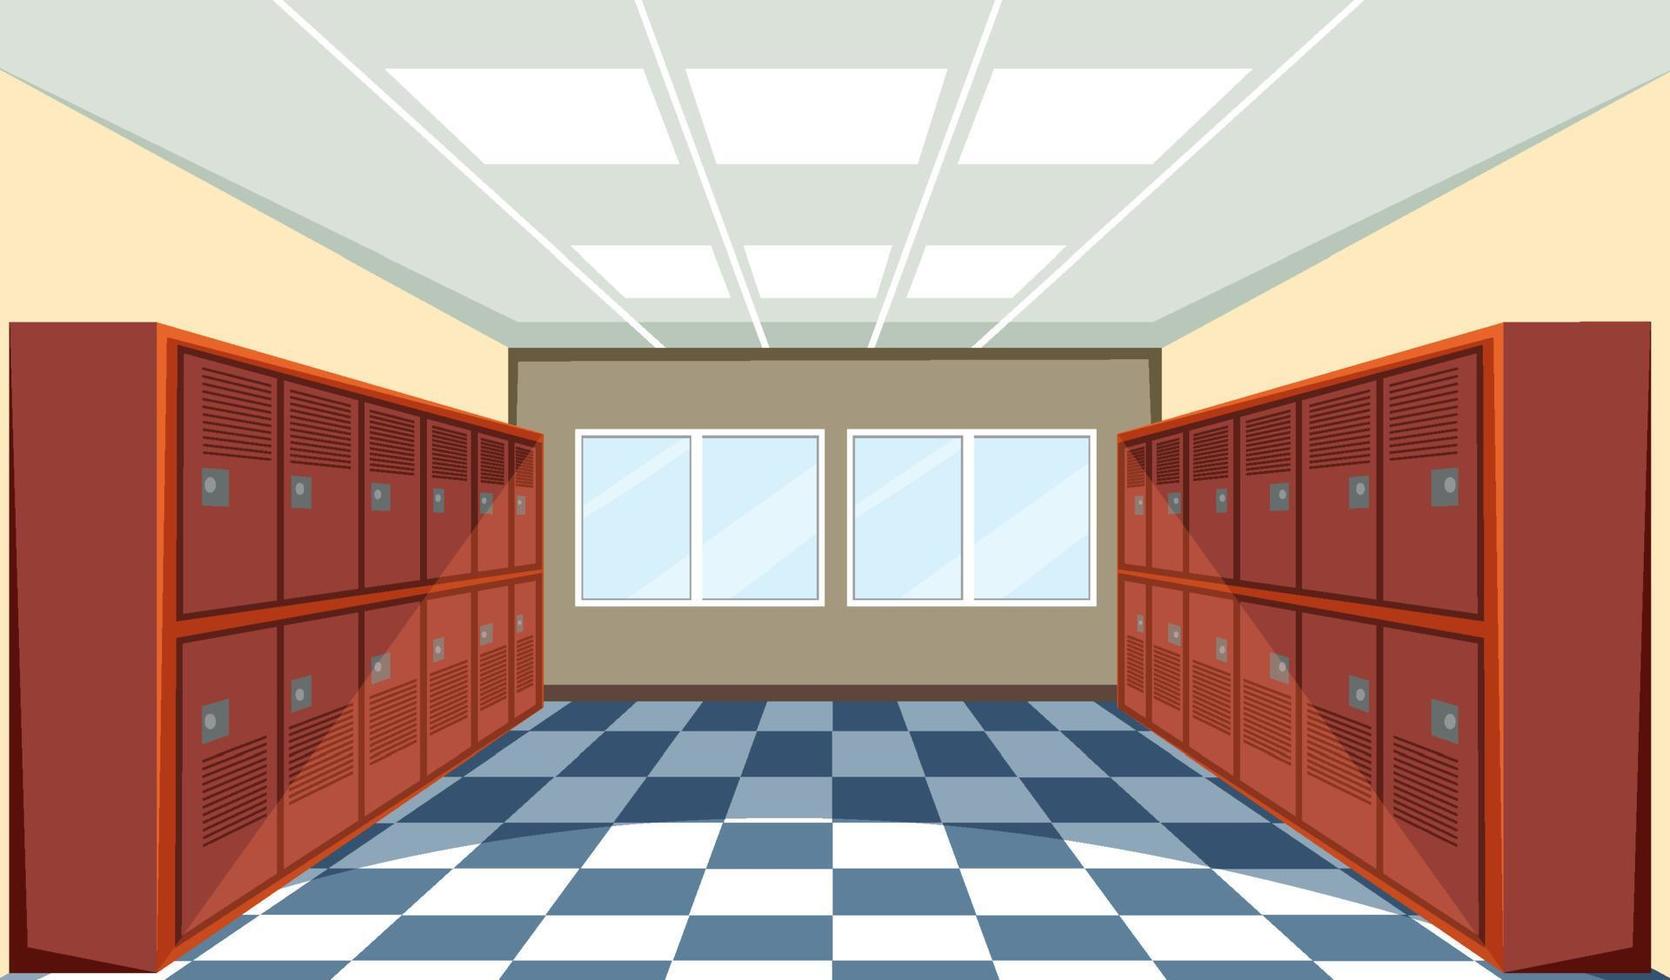 Interior of a school locker room vector